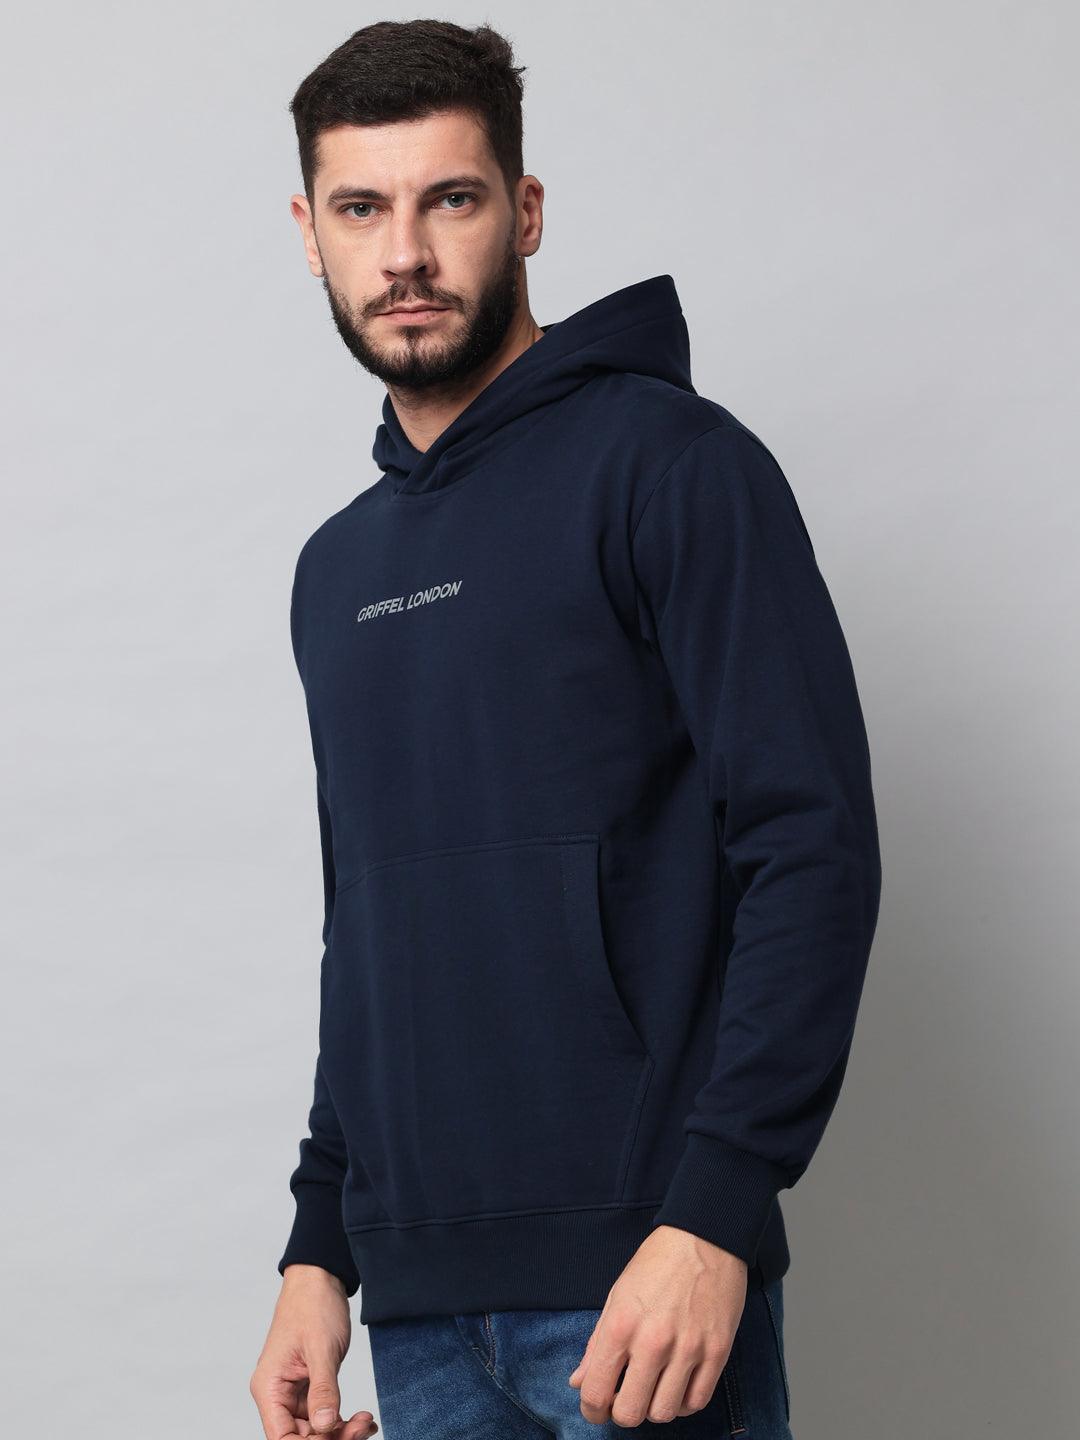 Griffel Men's Navy Cotton Front Logo Fleece Hoody Sweatshirt with Full Sleeve - griffel